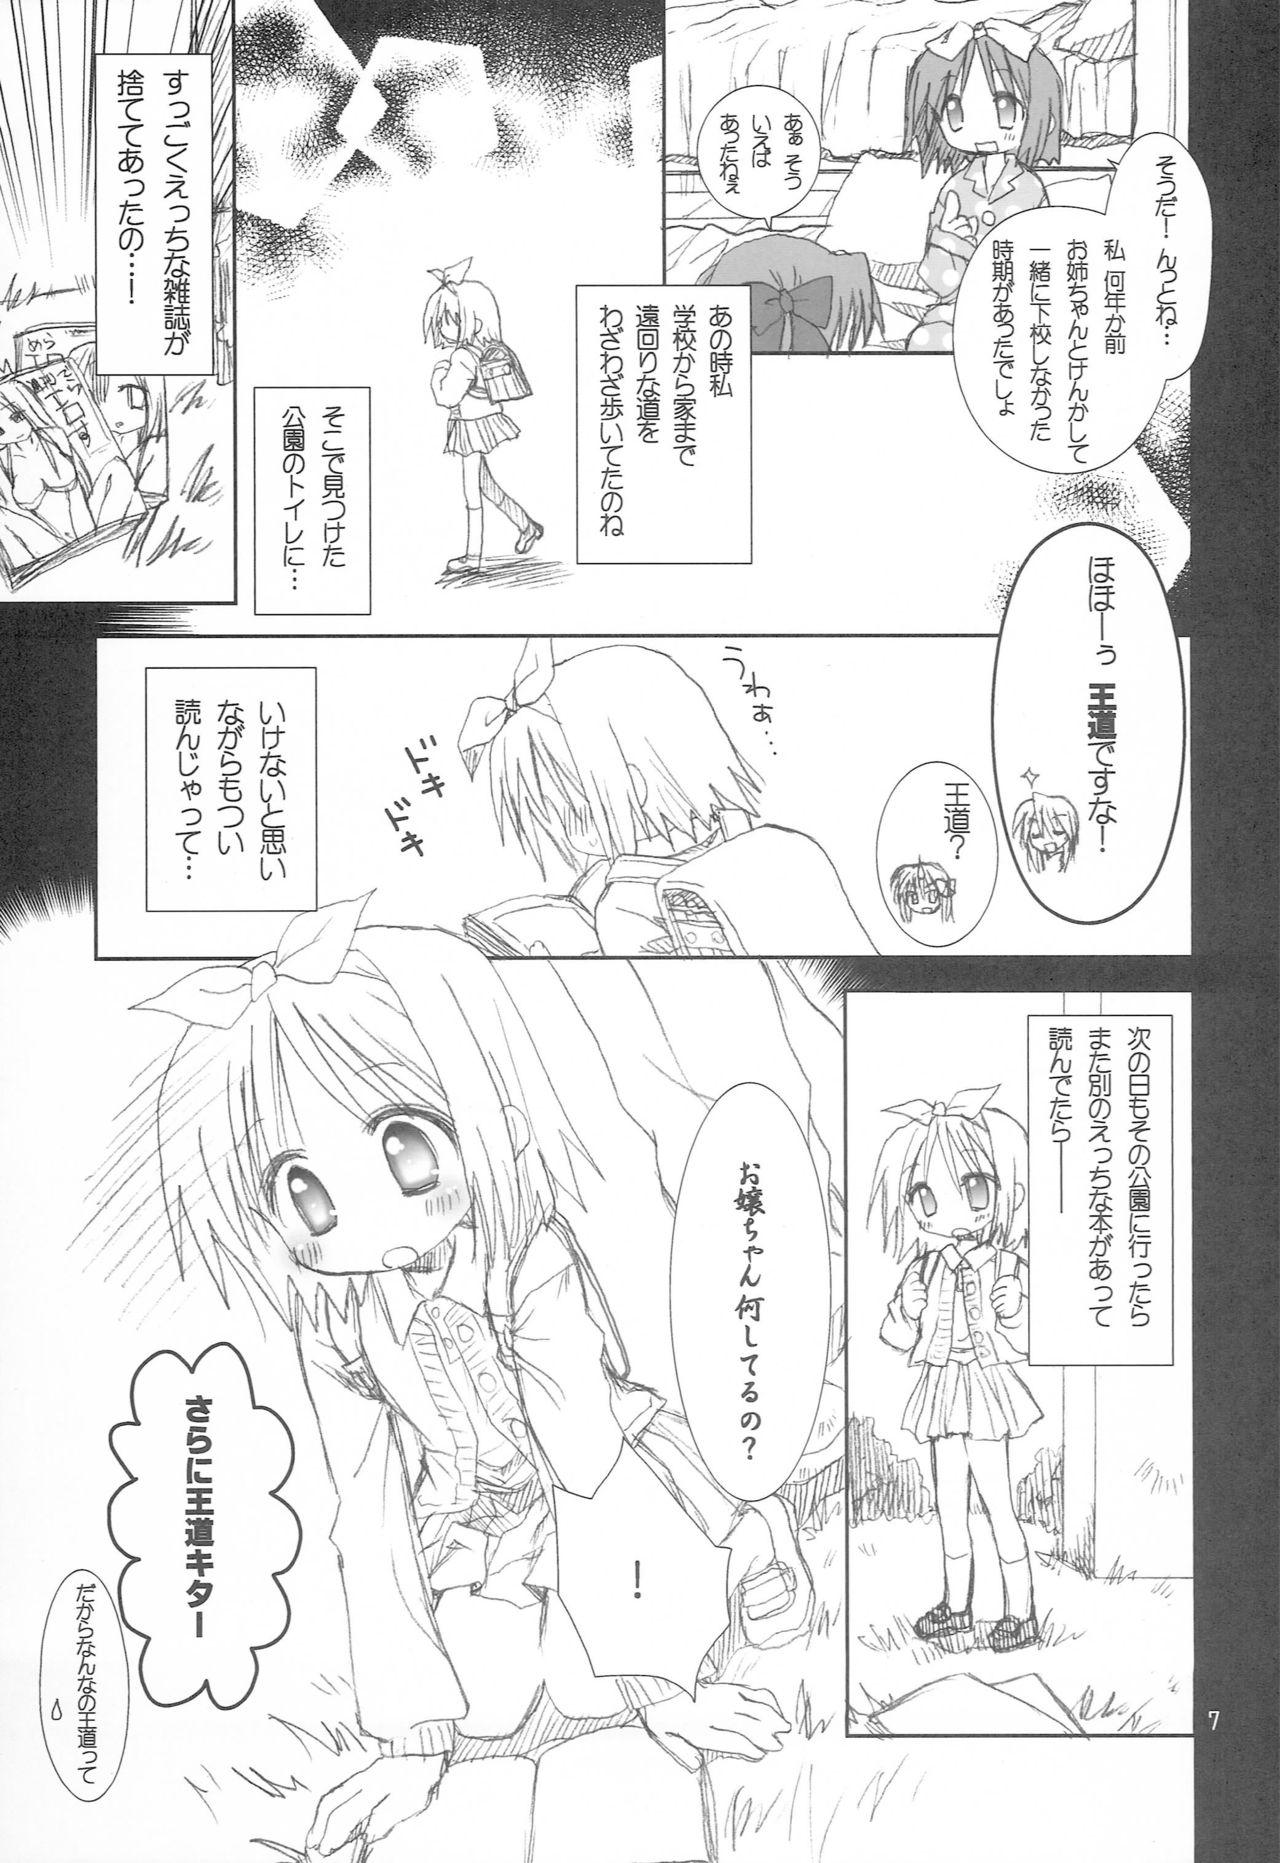 Stockings Yuruyuru Pajama Party - Lucky star Bisex - Page 6